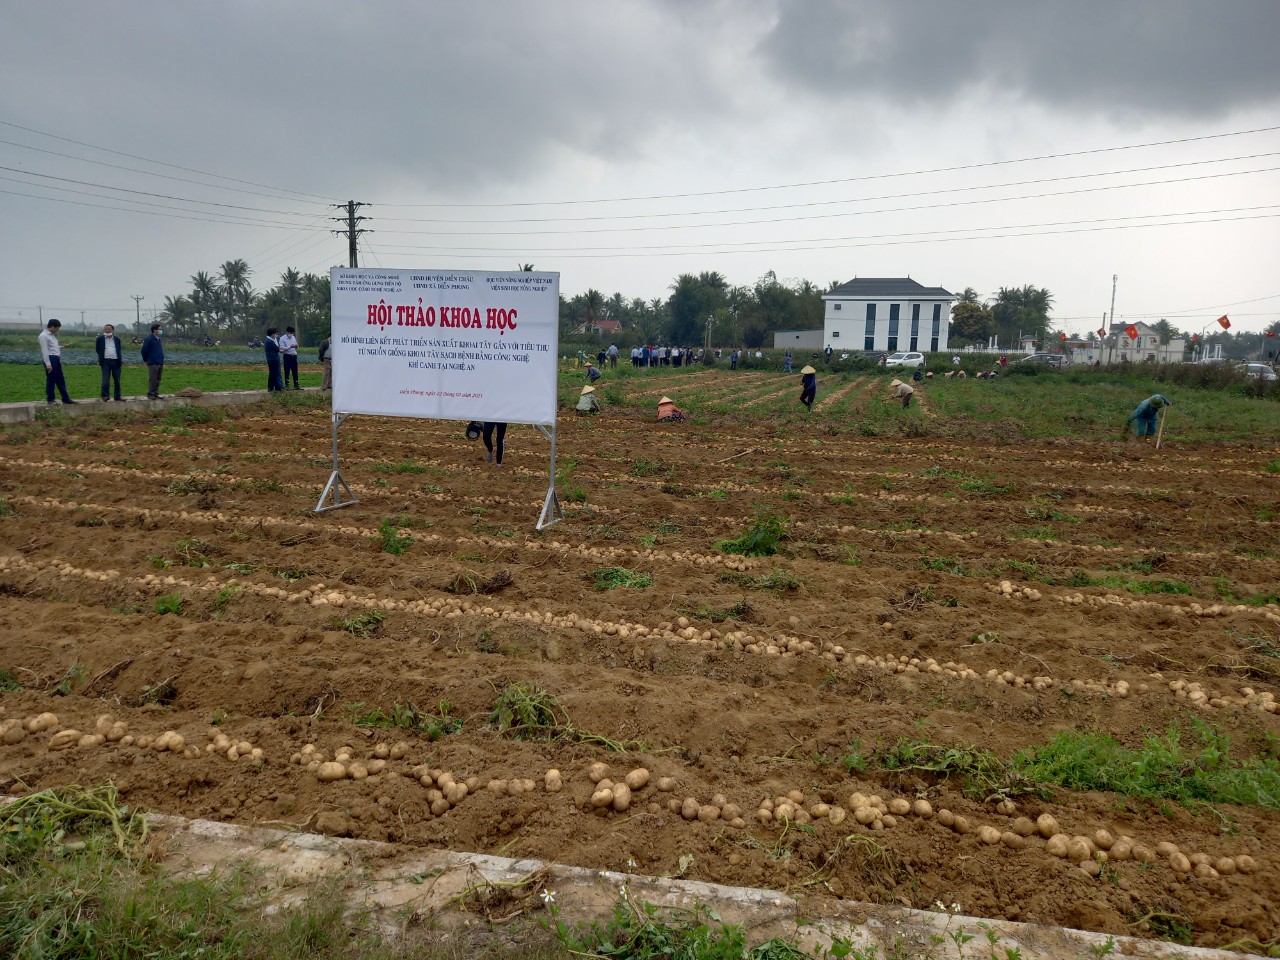 Mô hình liên kết phát triển sản xuất khoai tây gắn với liên kết tiêu thụ được triển khai thực hiện tại huyện Diễn Châu đạt hiệu quả cao